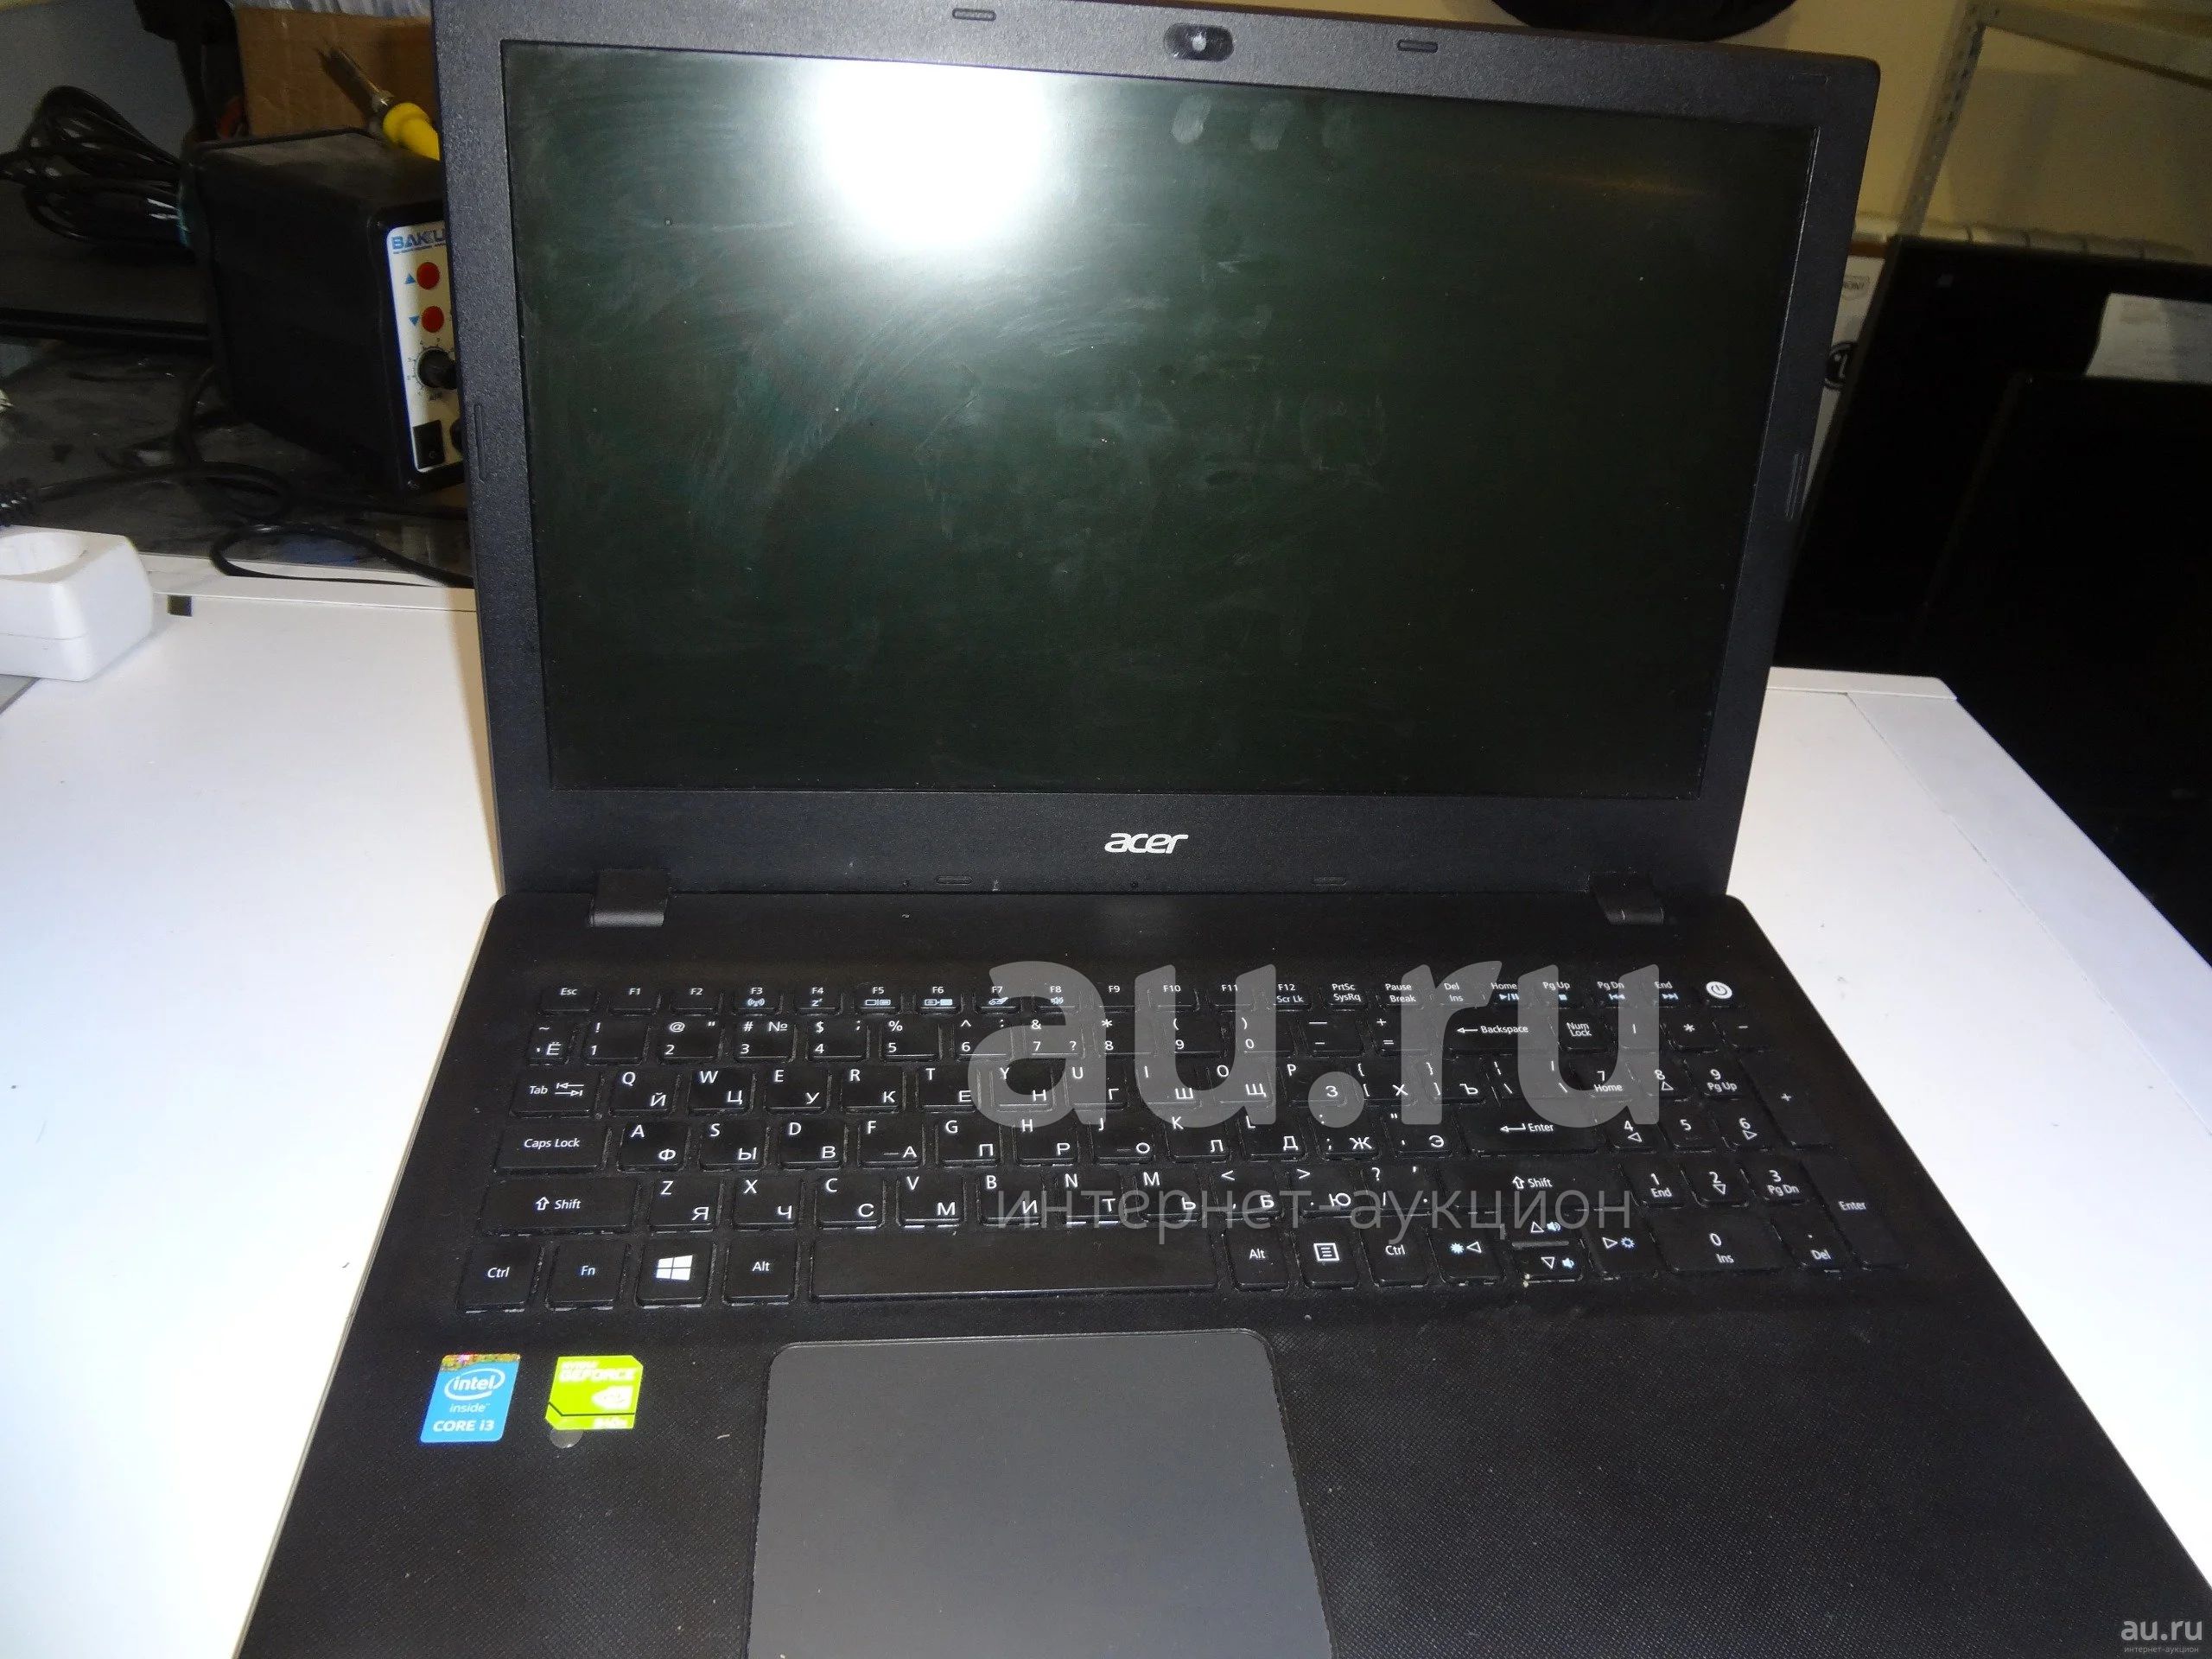 P 25 30 q 15 20. Acer n15q1. Ноутбук Acer Extensa 2511 Series. Ноутбук Acer n15q1 характеристики. Acer n15q1 Оперативная память.